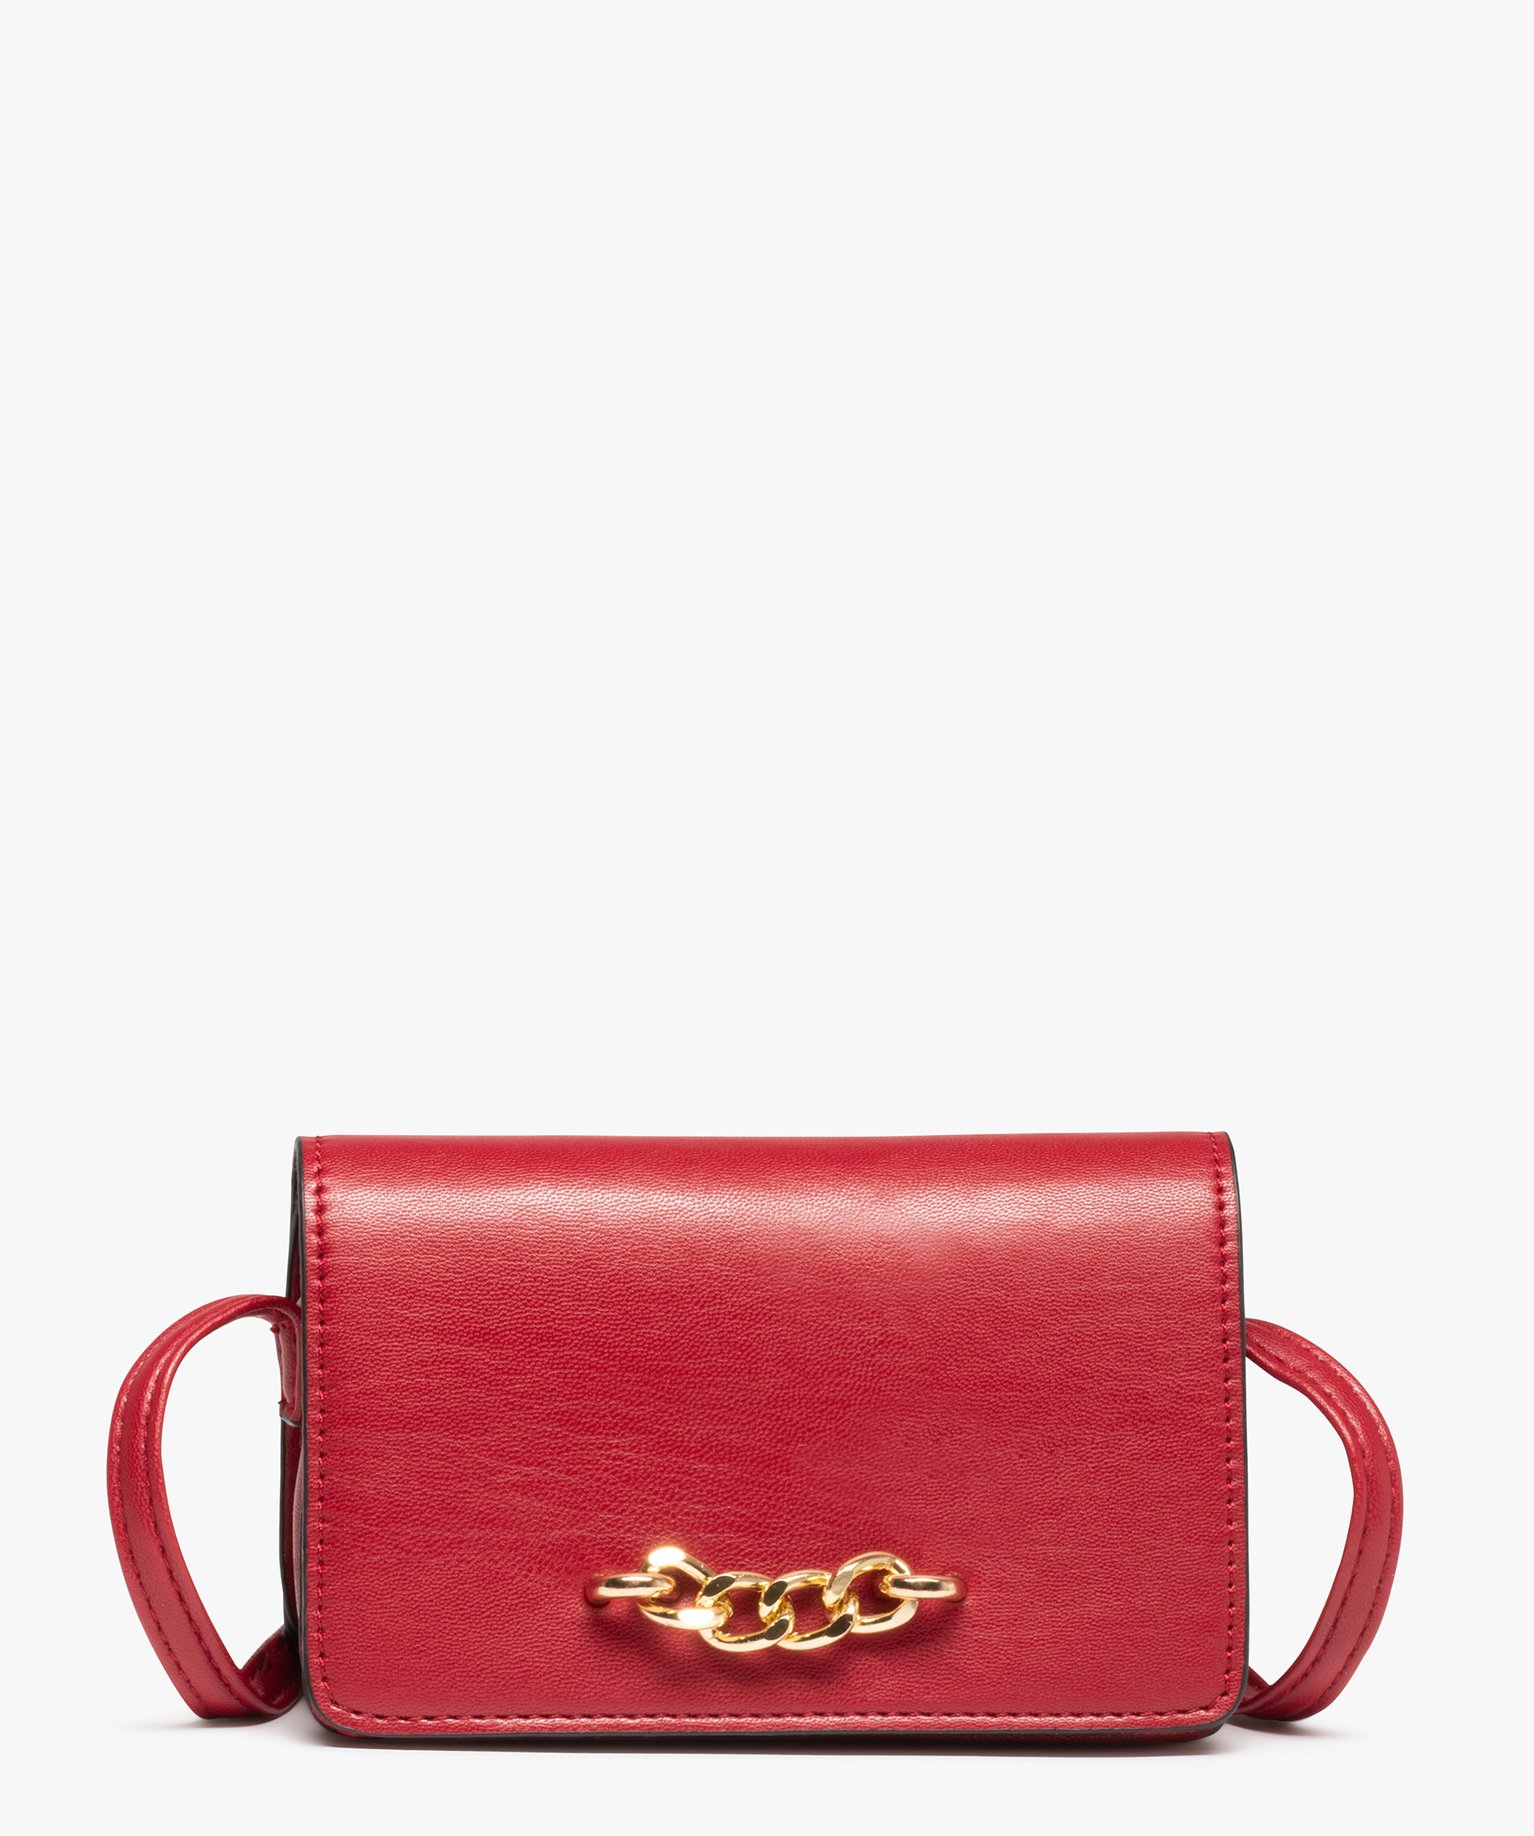 pochette femme avec rabat et chaine metallique rouge porte-monnaie et portefeuilles